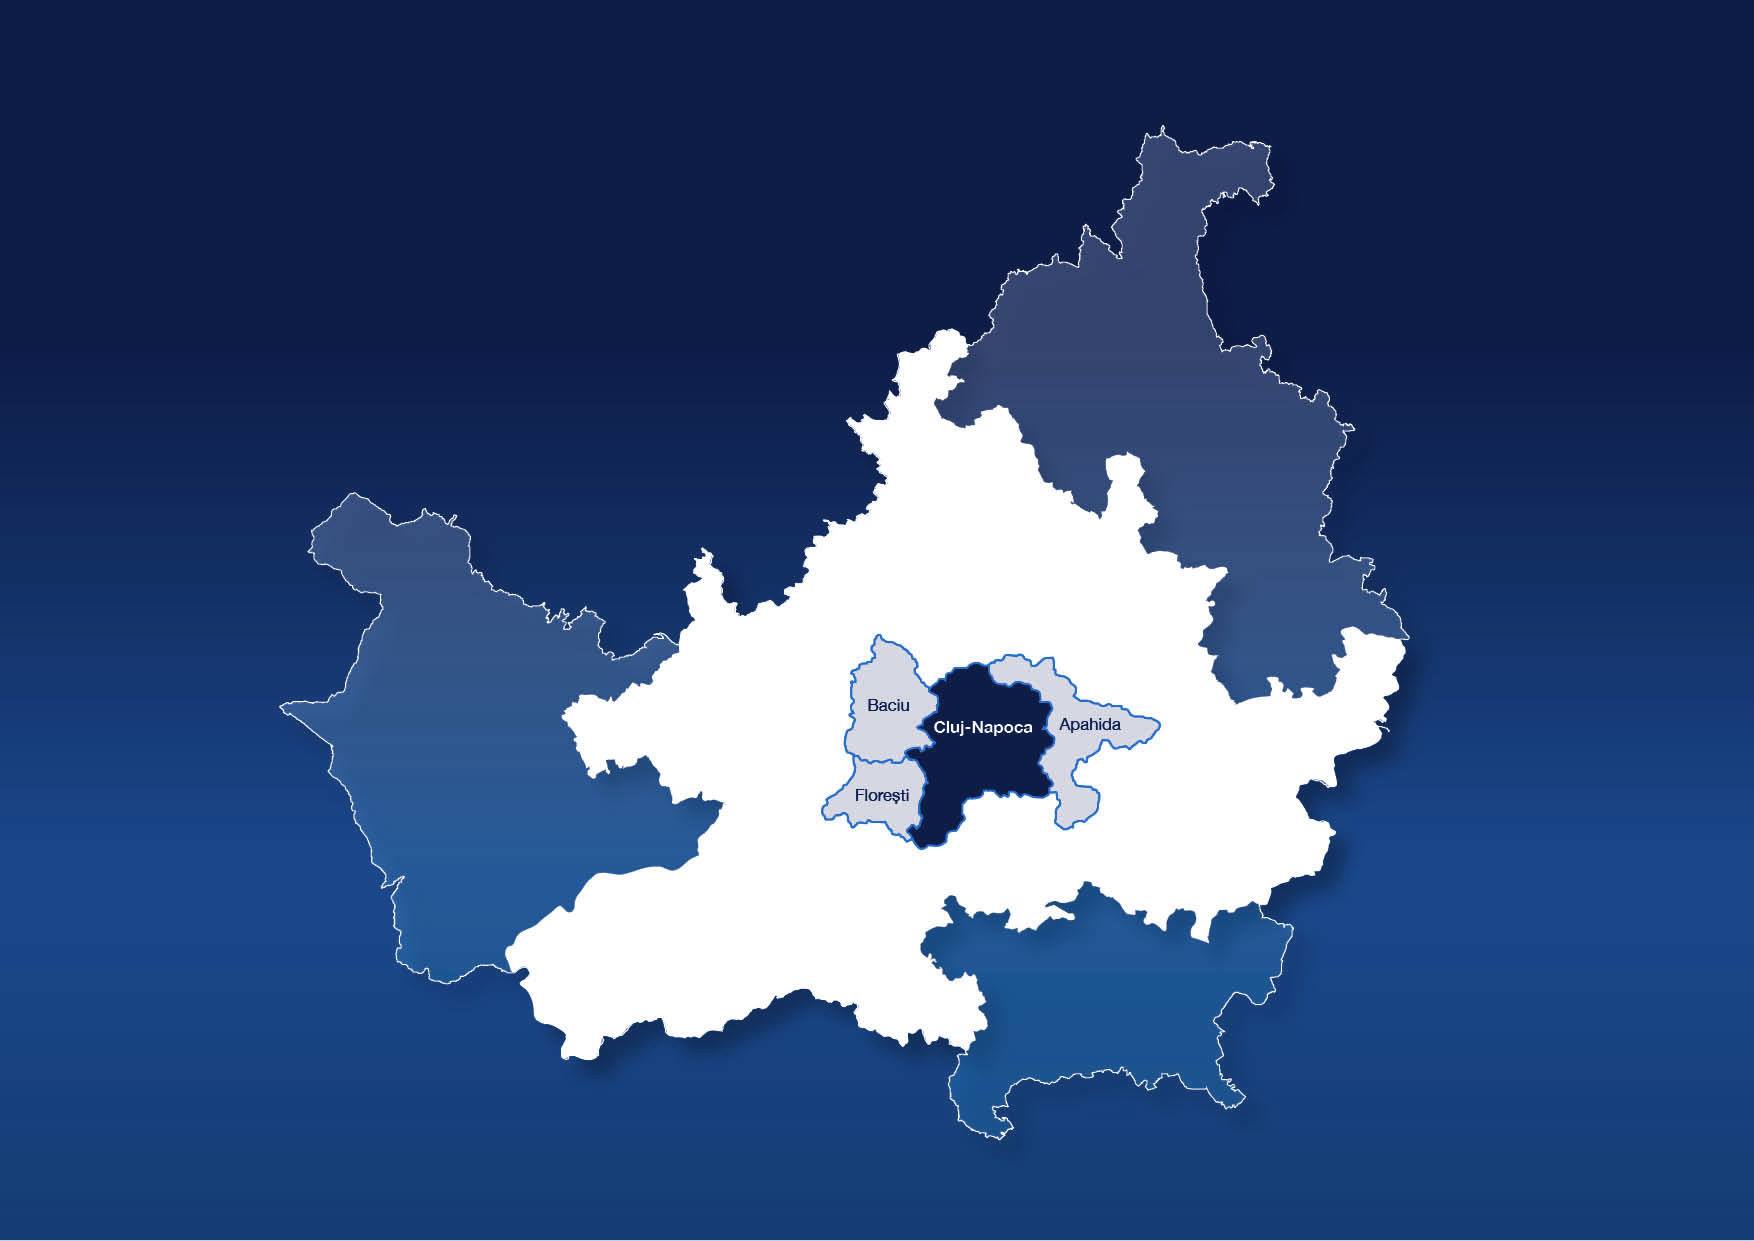 Contopirea administrativă a municipiului Cluj-Napoca cu comunele Florești, Apahida și Baciu.